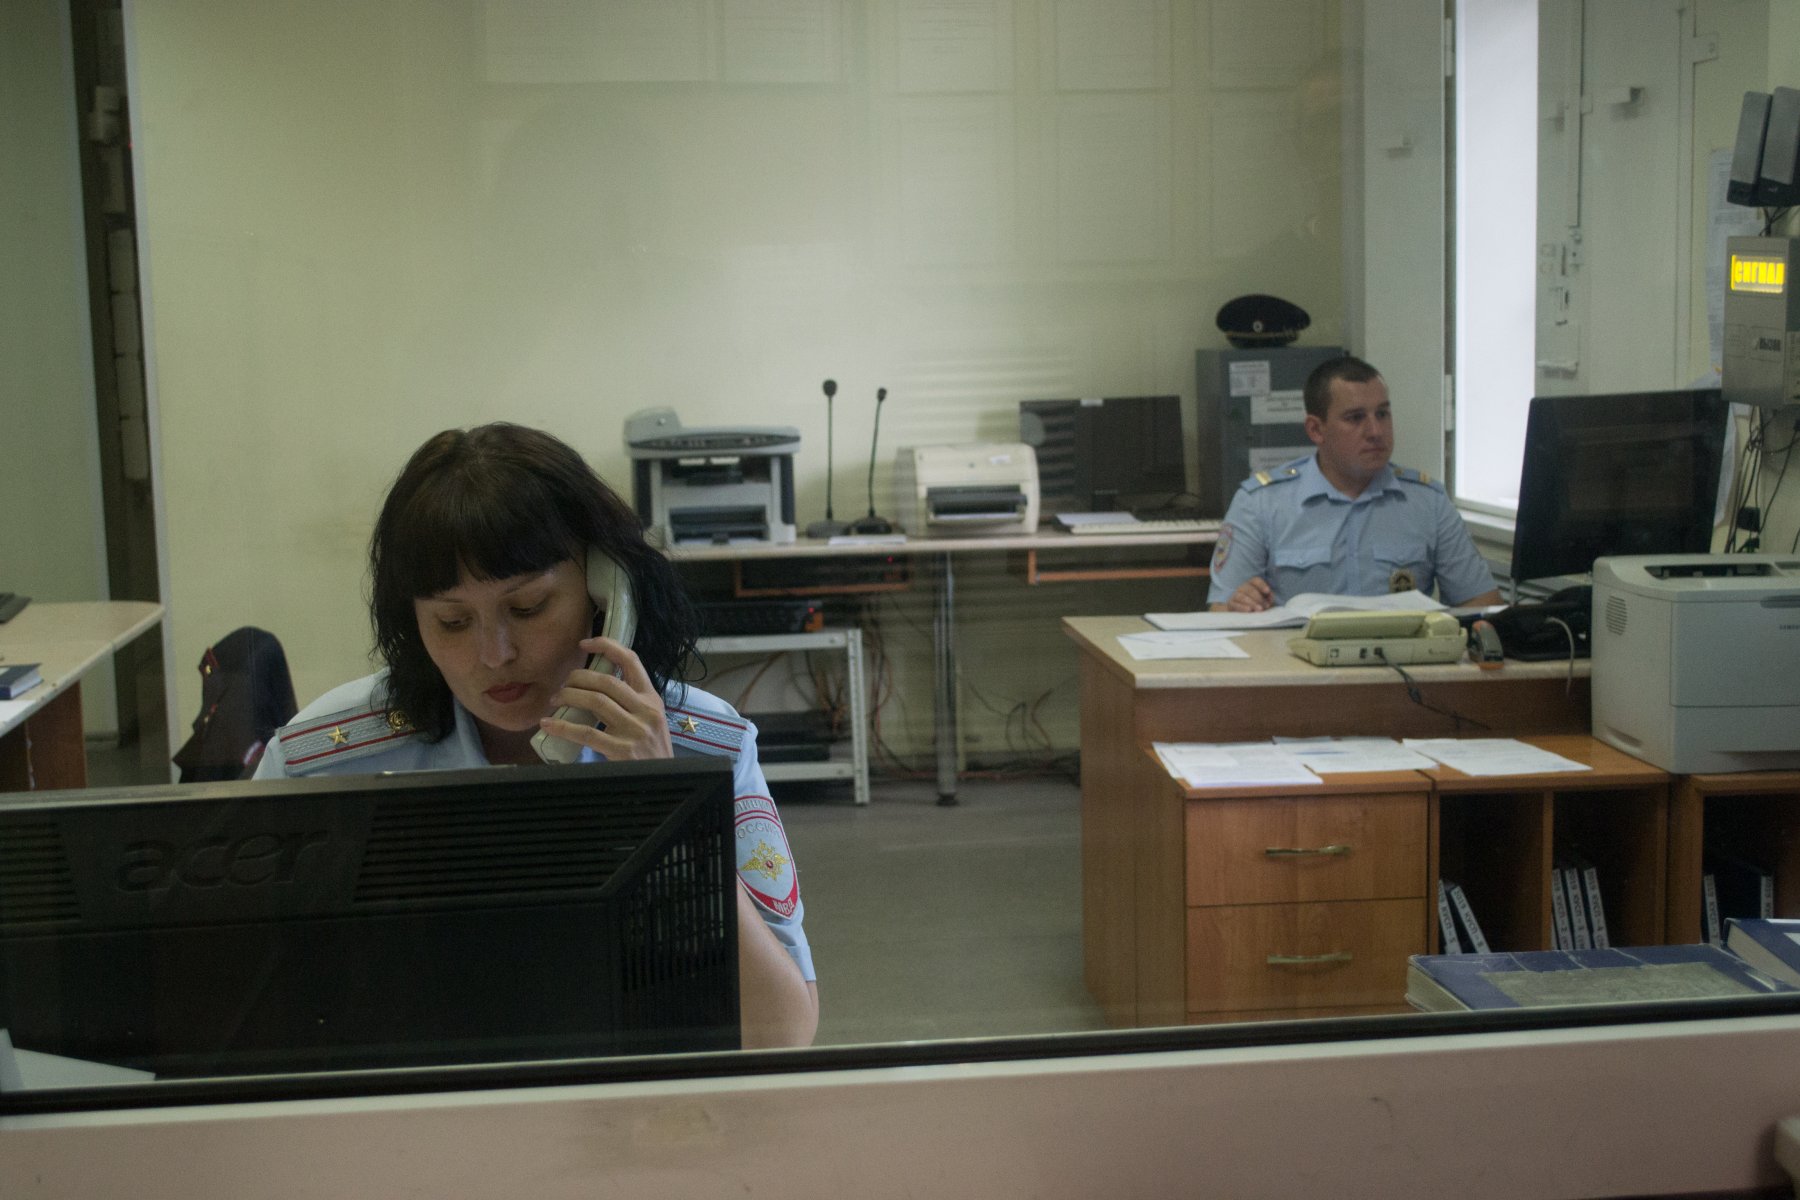  В Серпухове ищут работников компании, которая находится в стадии банкротства